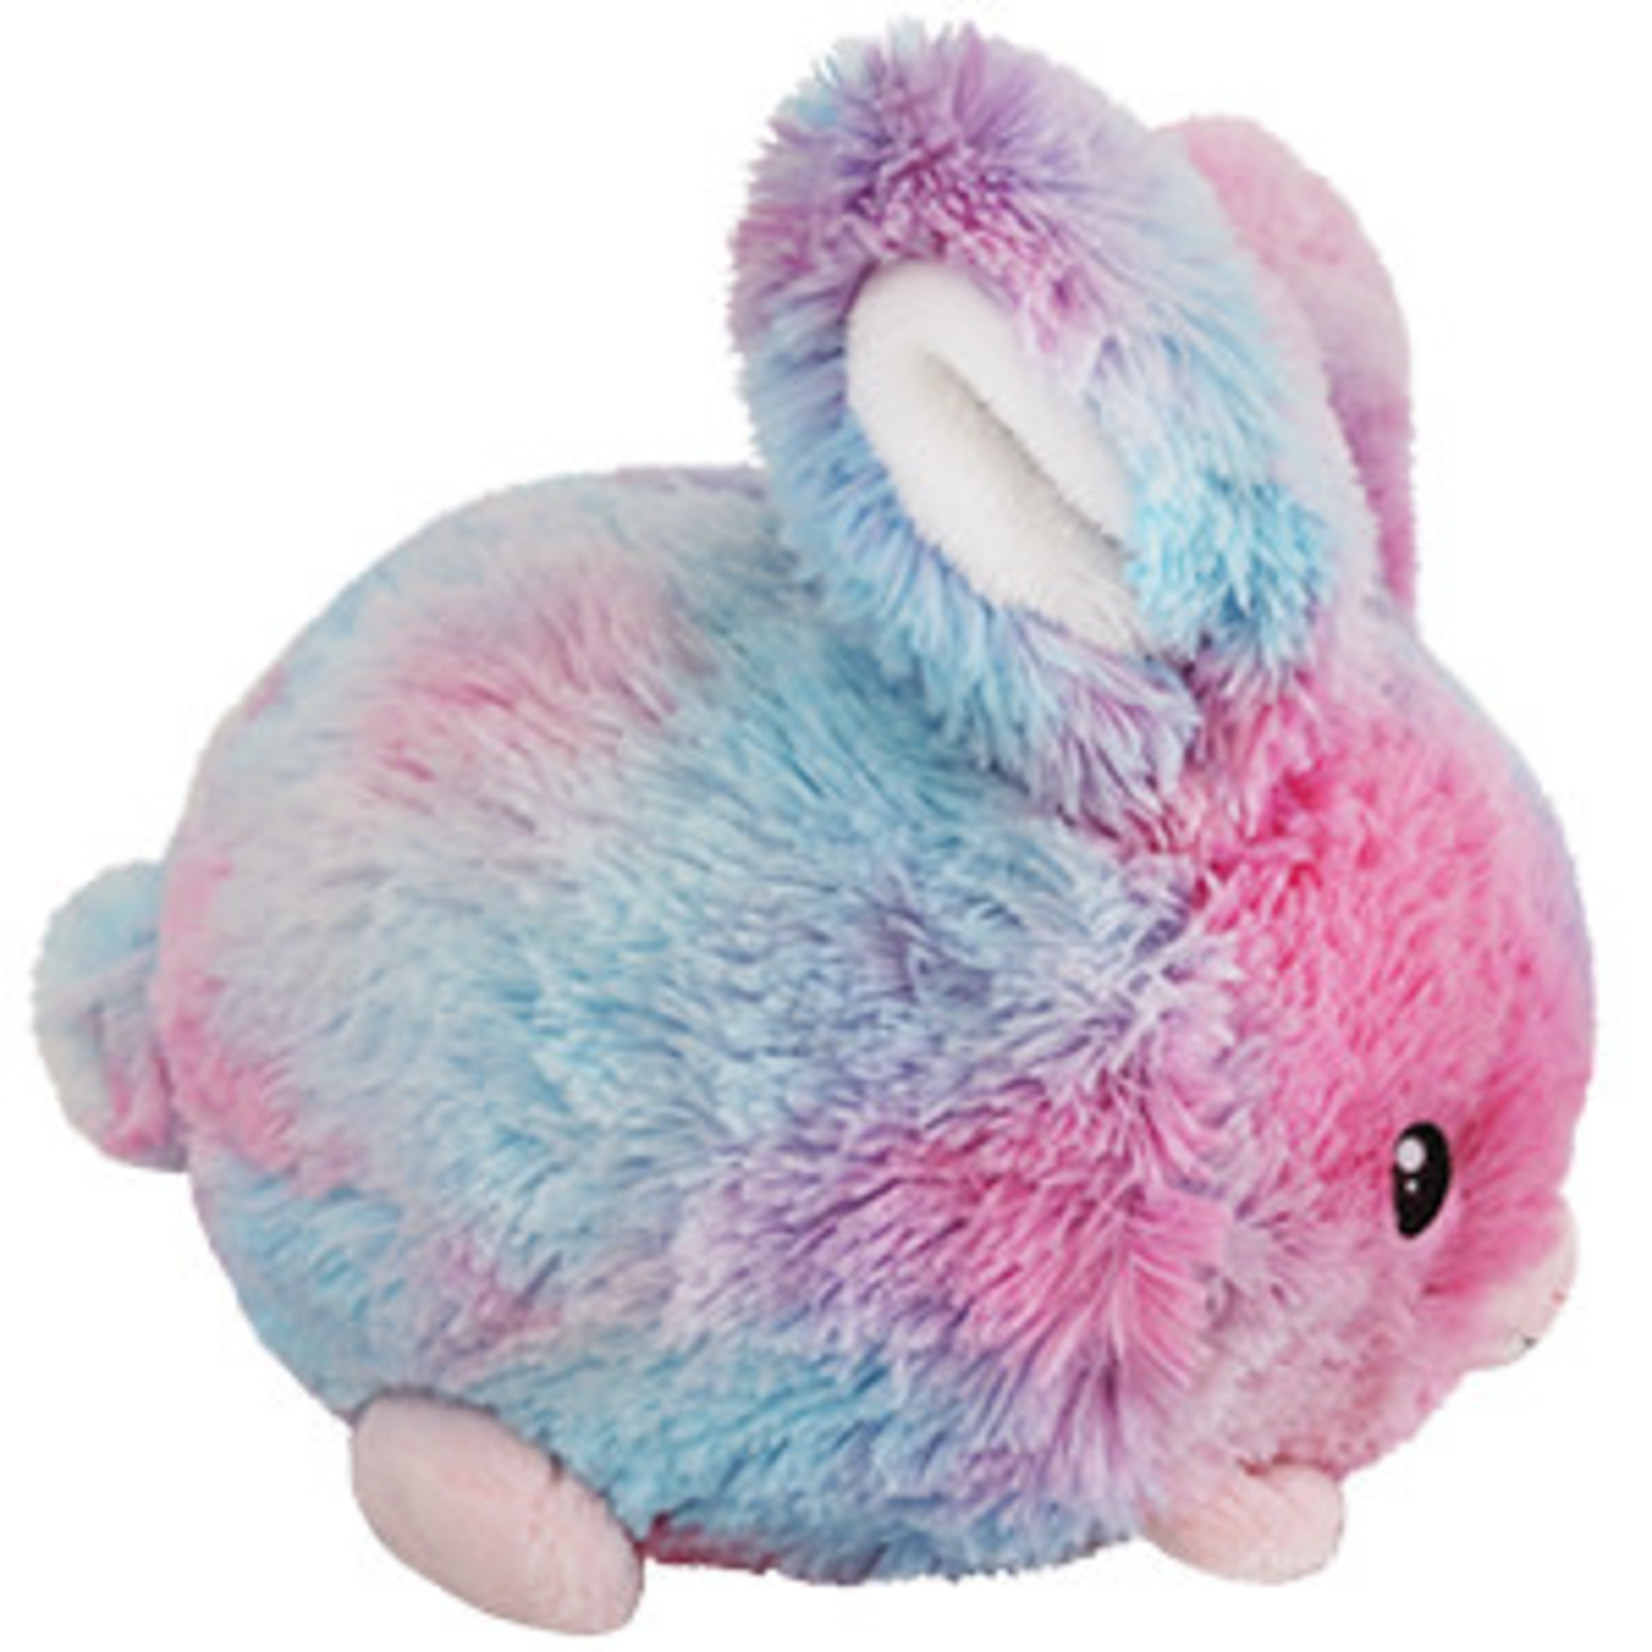 Squishable Mini: Cotton Candy Bunny